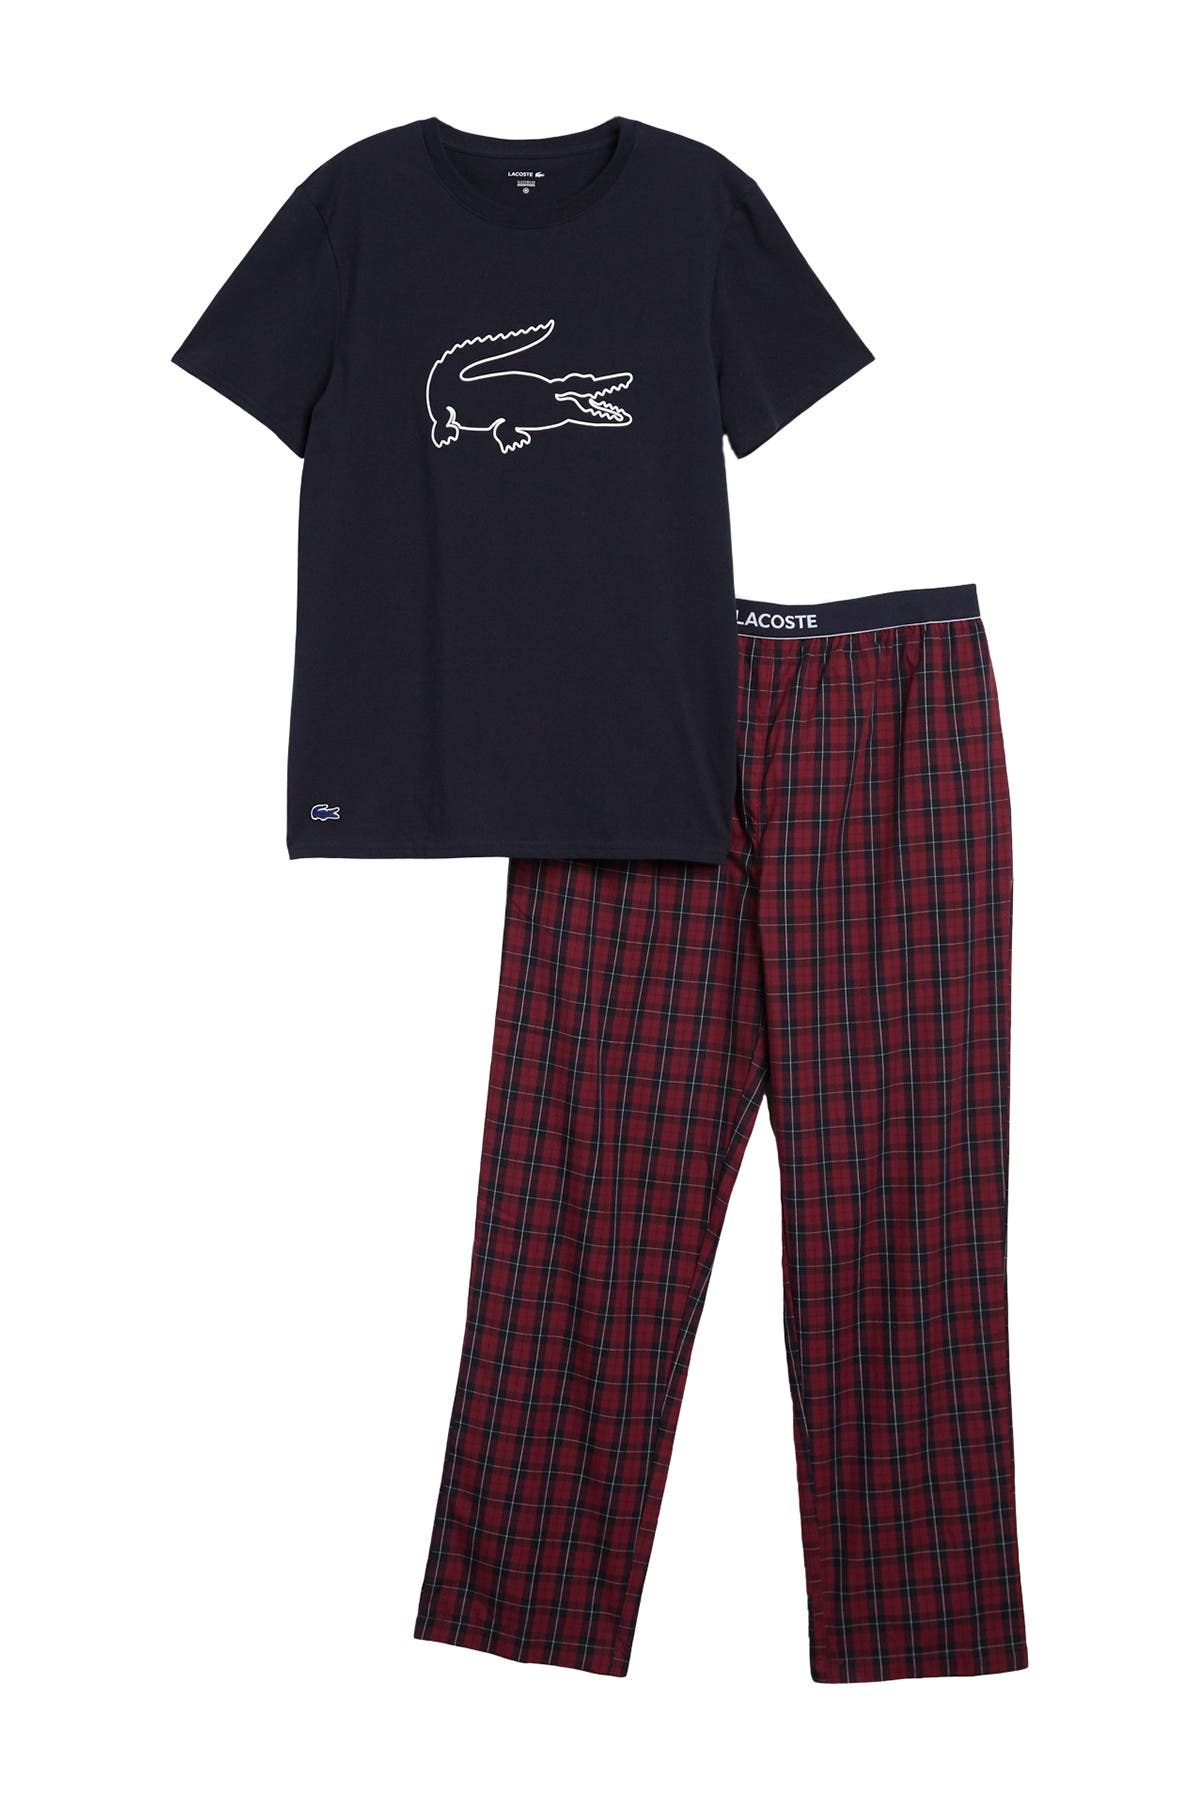 lacoste pajamas set